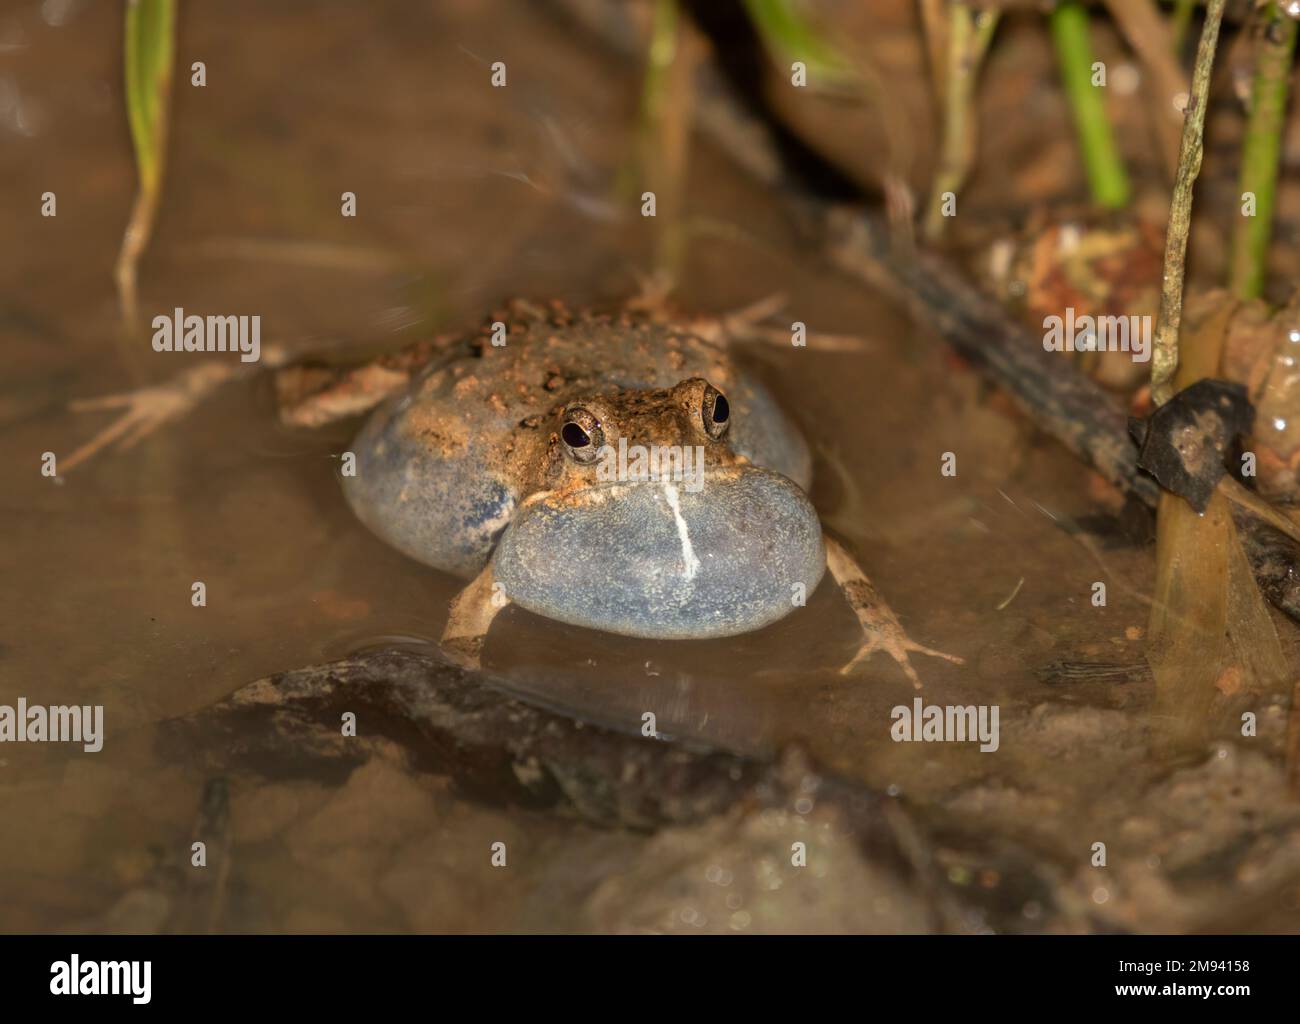 Túngara frog (Physalaemus pustulosus) calling in the night, Costa Rica Stock Photo